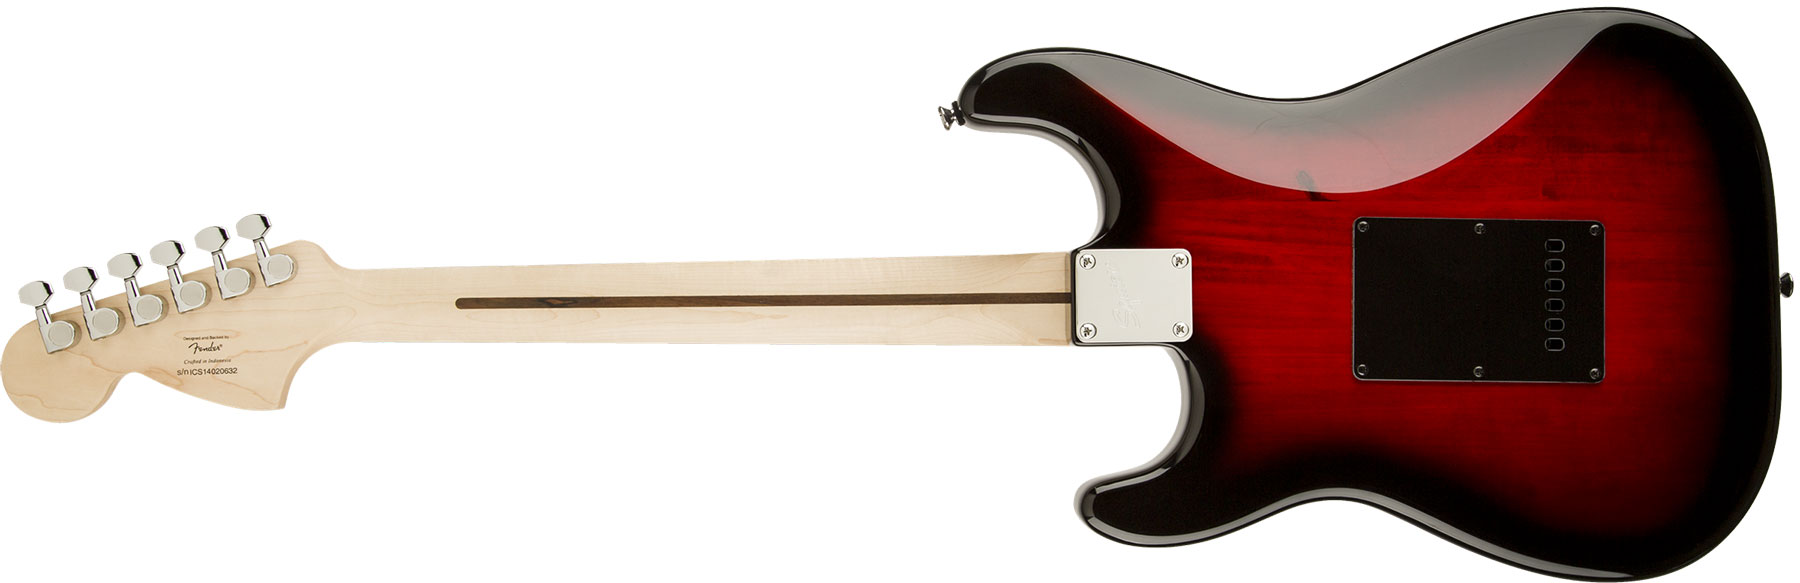 Squier Strat Standard Rw - Antique Burst - Guitarra eléctrica con forma de str. - Variation 1